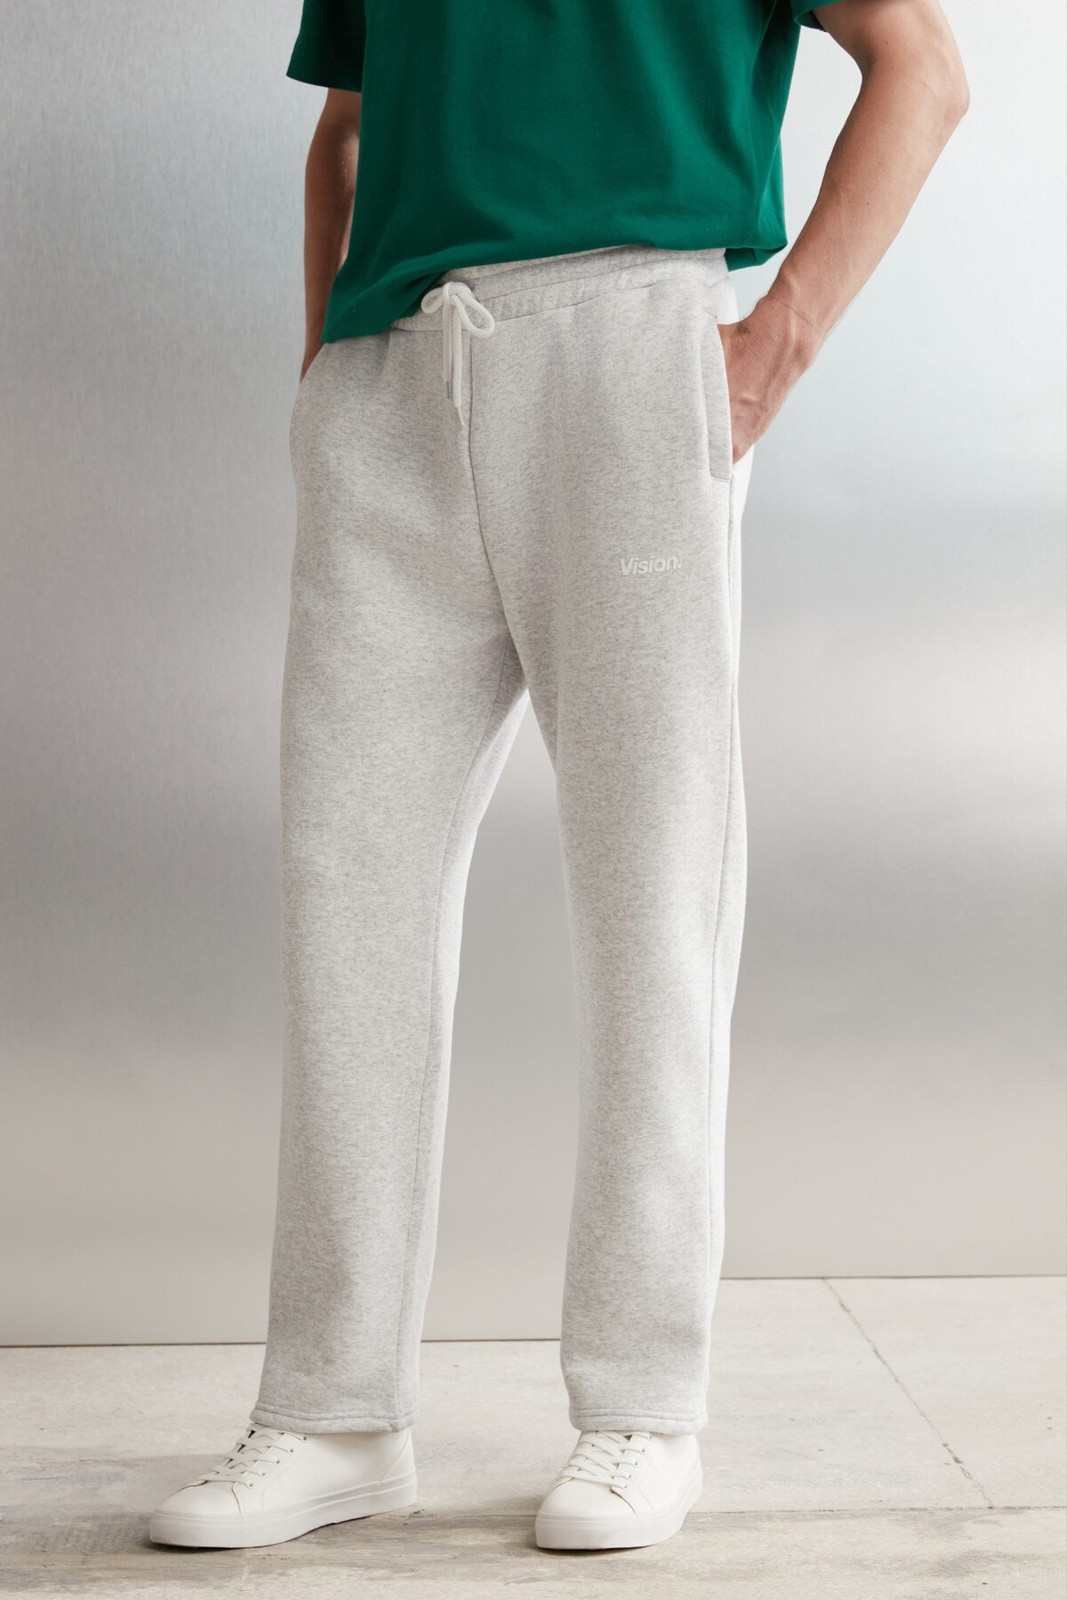 GRIMELANGE Freddy Men's Regular Fit Soft Fabric Printed 3-Pocket Carmelange Sweatpant